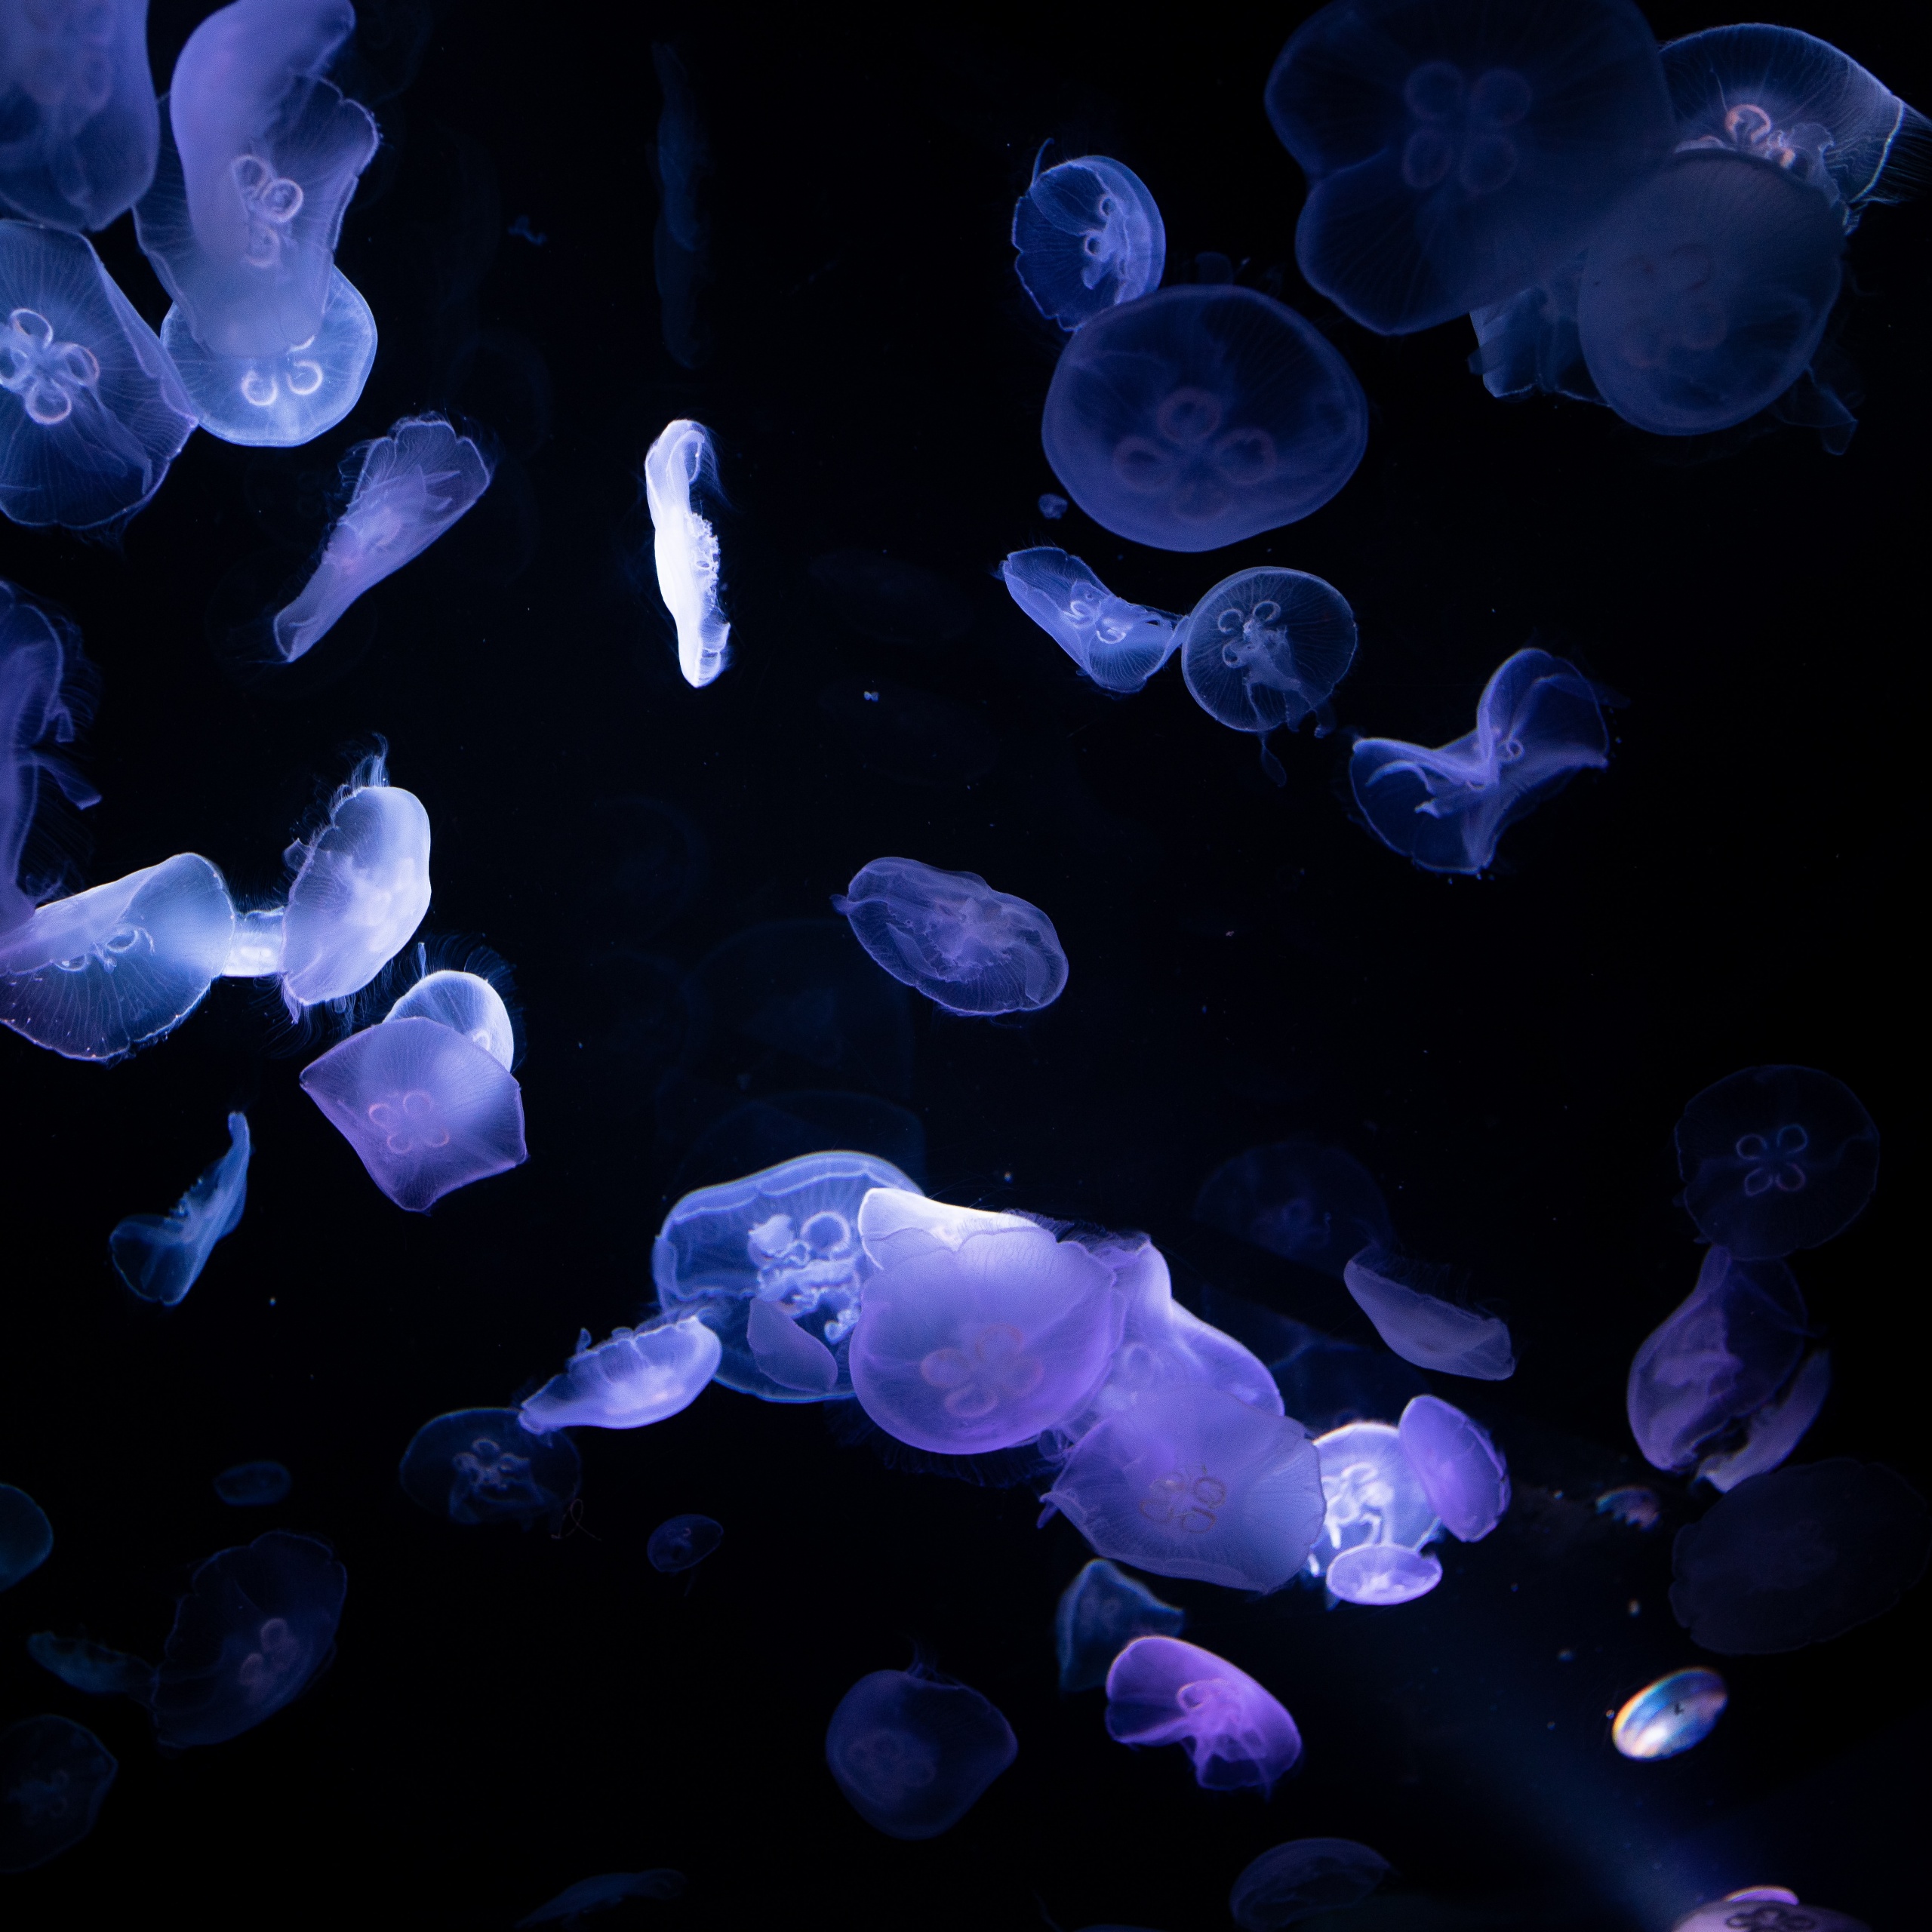 Chiêm ngưỡng vẻ đẹp của những con sứa biển đang bơi và những sinh vật khác trong đại dương sâu thẳm không viền đỏ. Hình nền này sẽ giúp bạn thấy được sự phong phú của cuộc sống dưới đại dương trong suốt.